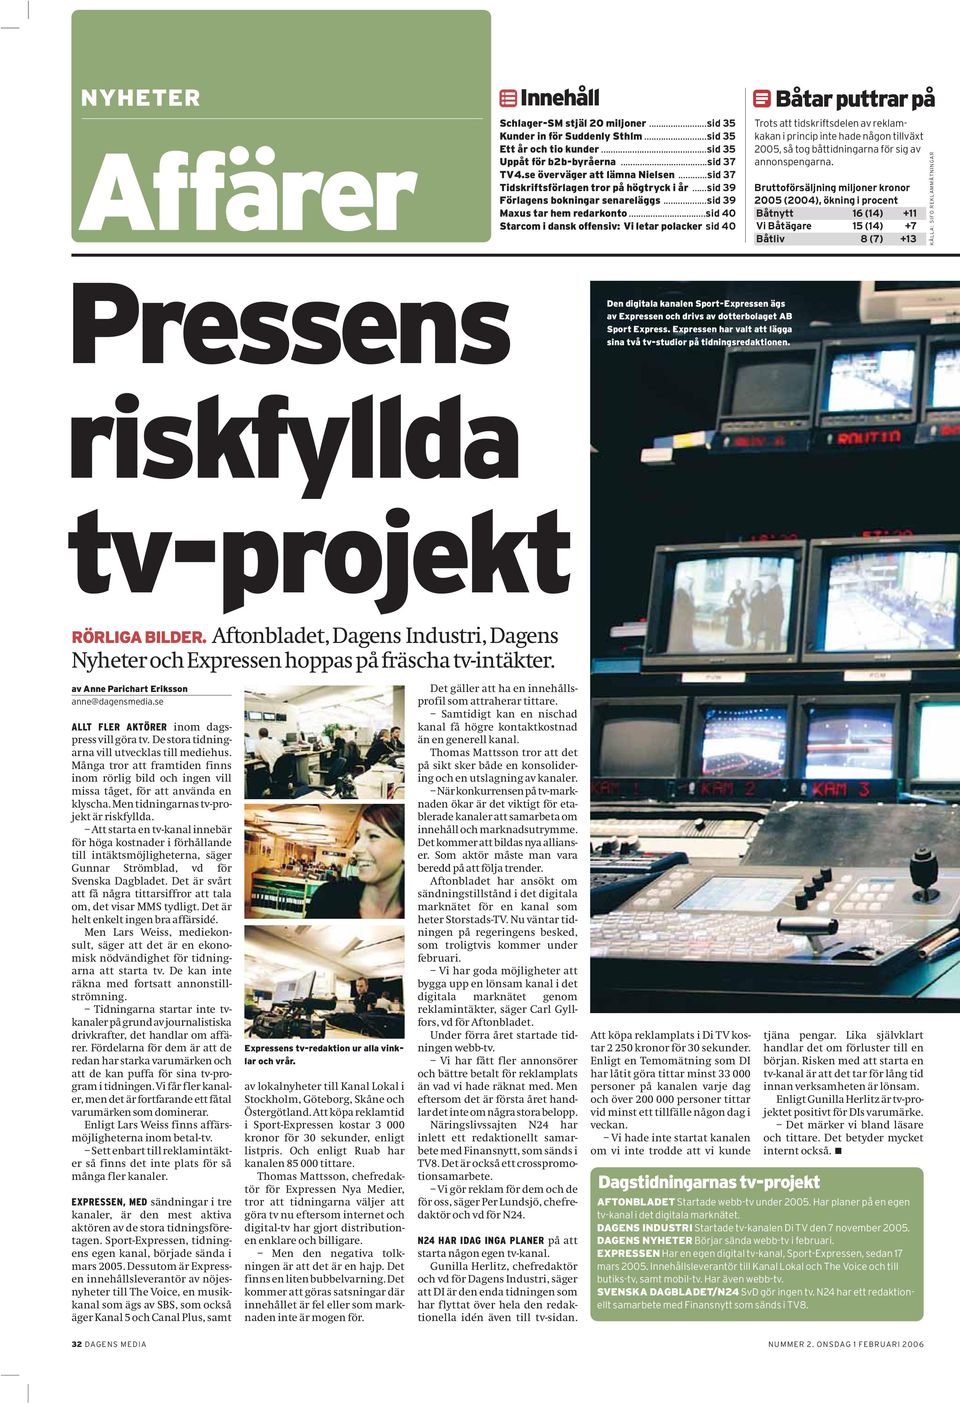 ..sid 40 Starcom i dansk offensiv: Vi letar polacker sid 40 Båtar puttrar på Trots att tidskriftsdelen av reklamkakan i princip inte hade någon tillväxt 2005, så tog båttidningarna för sig av